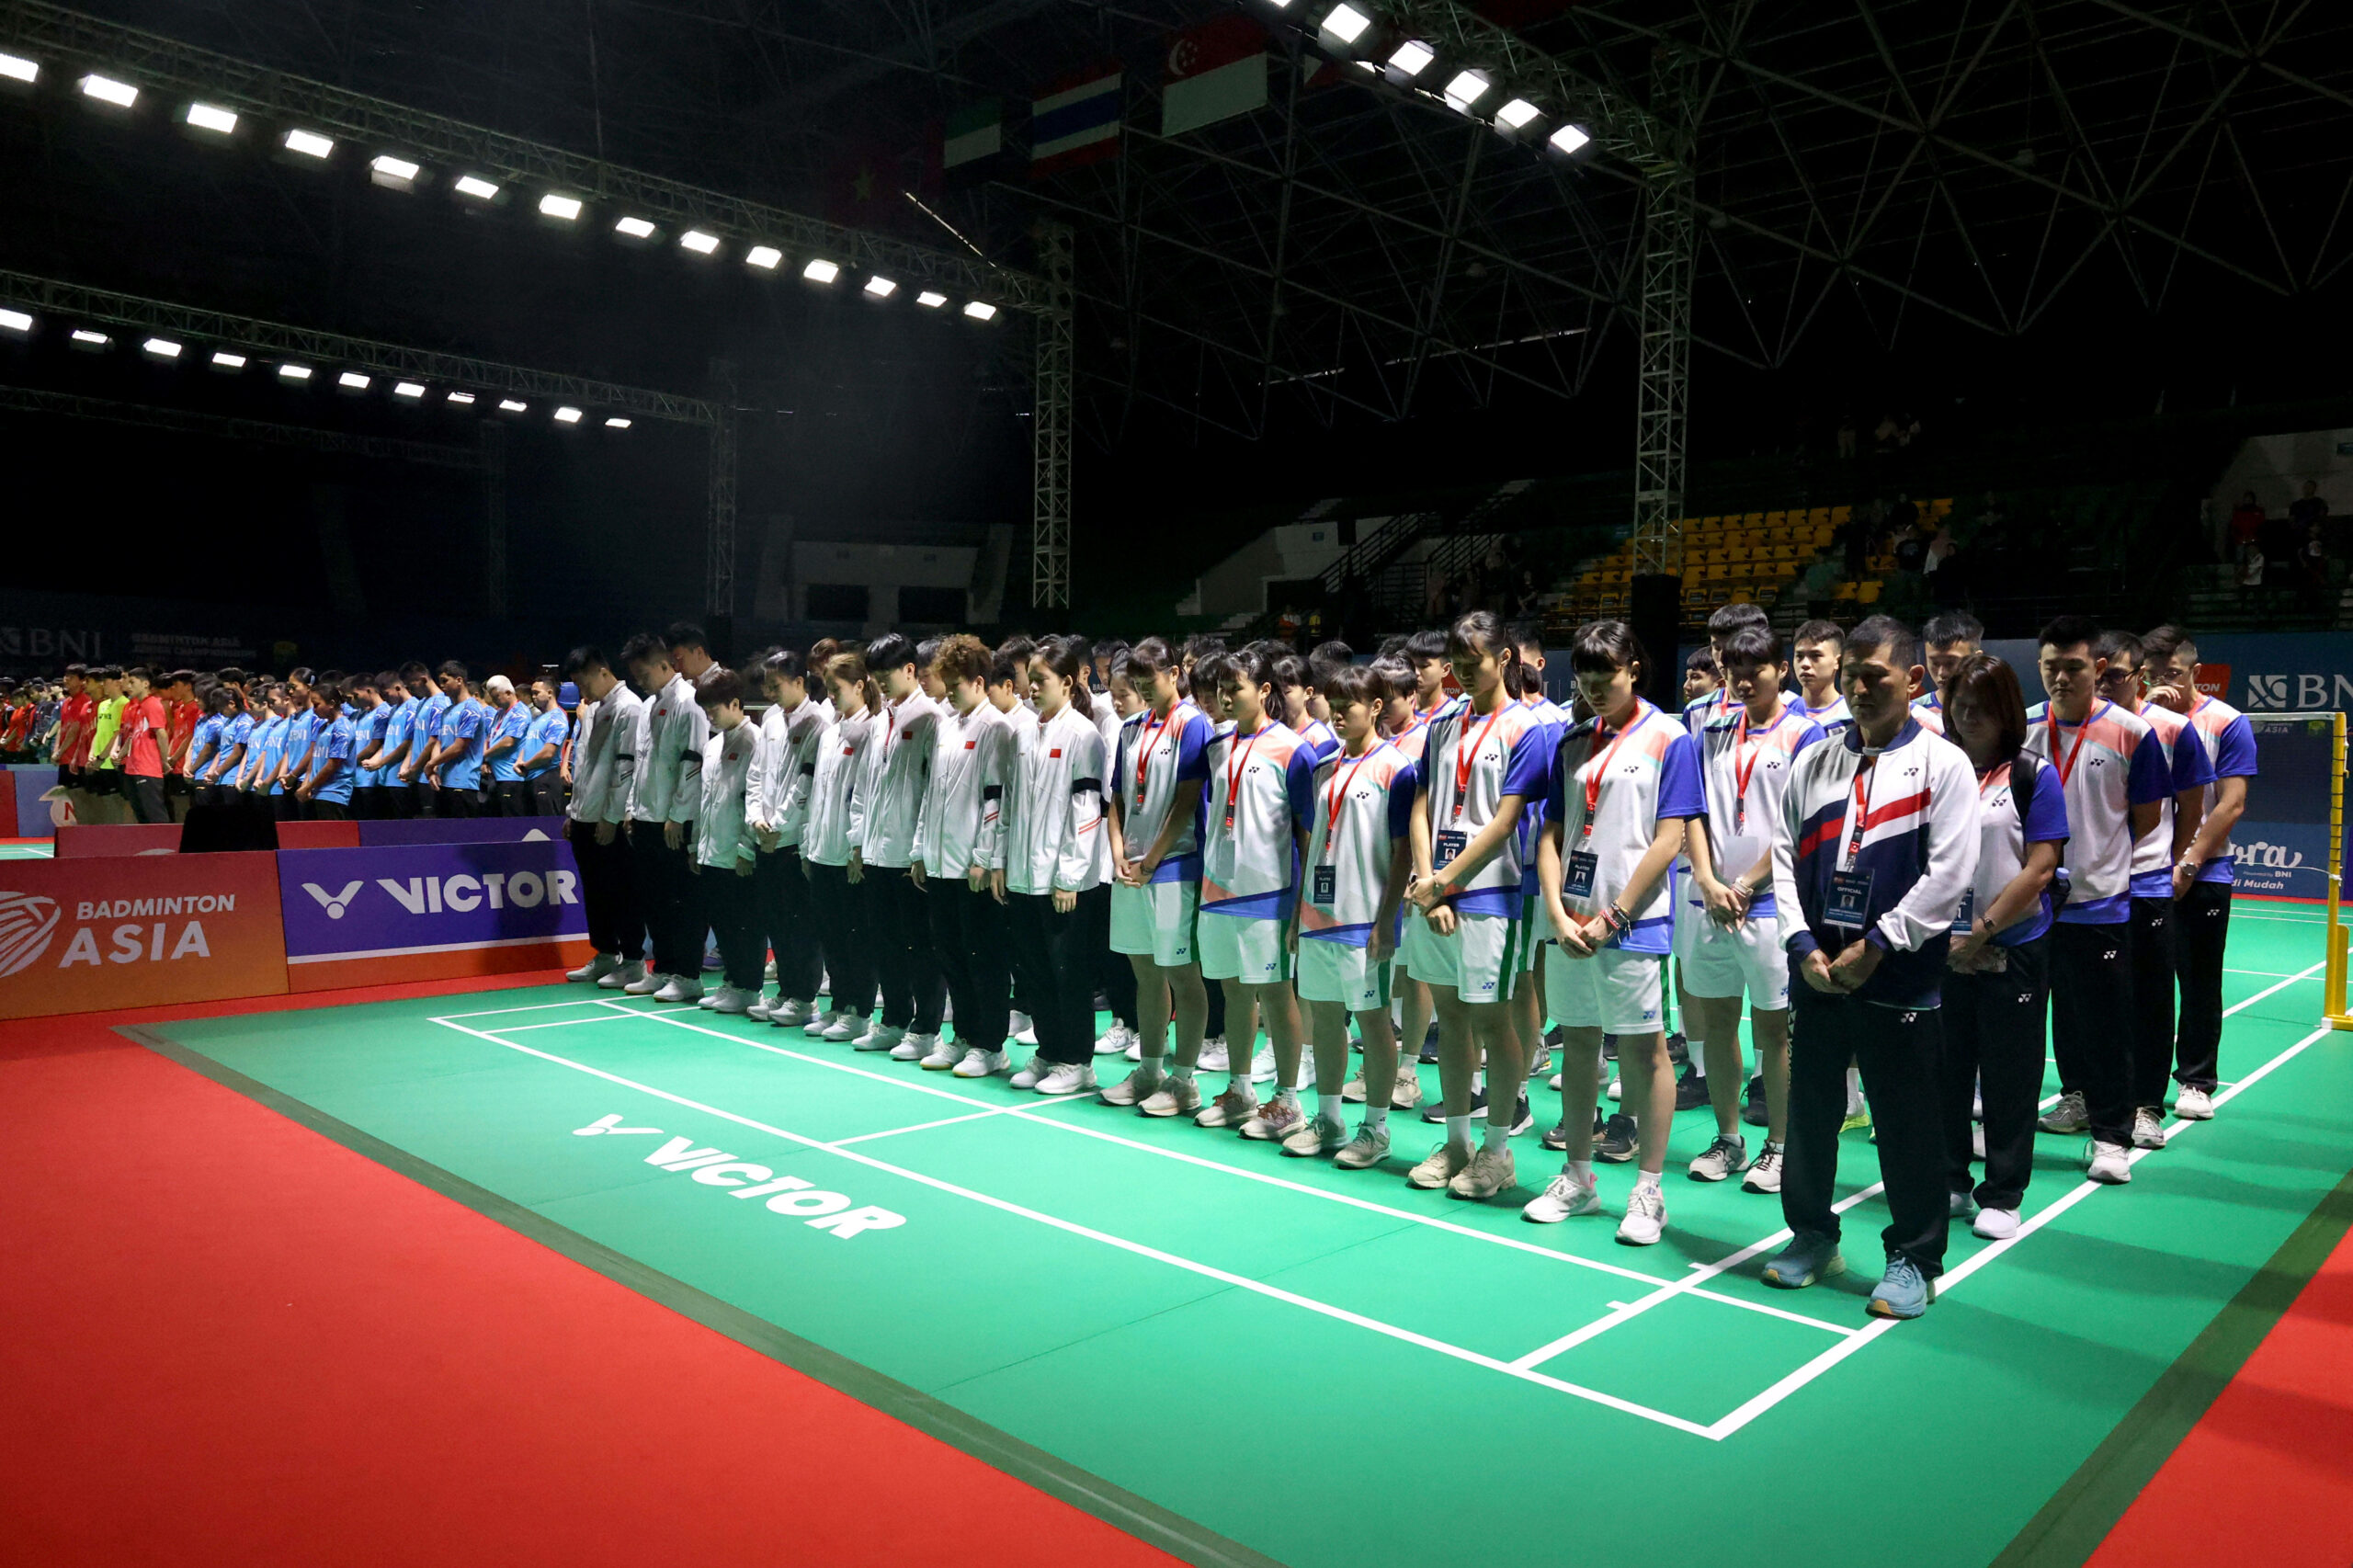 Bei der asiatischen Juniorenmeisterschaft gedachten die Spieler dem verstorbenen Zhang Zhijie.